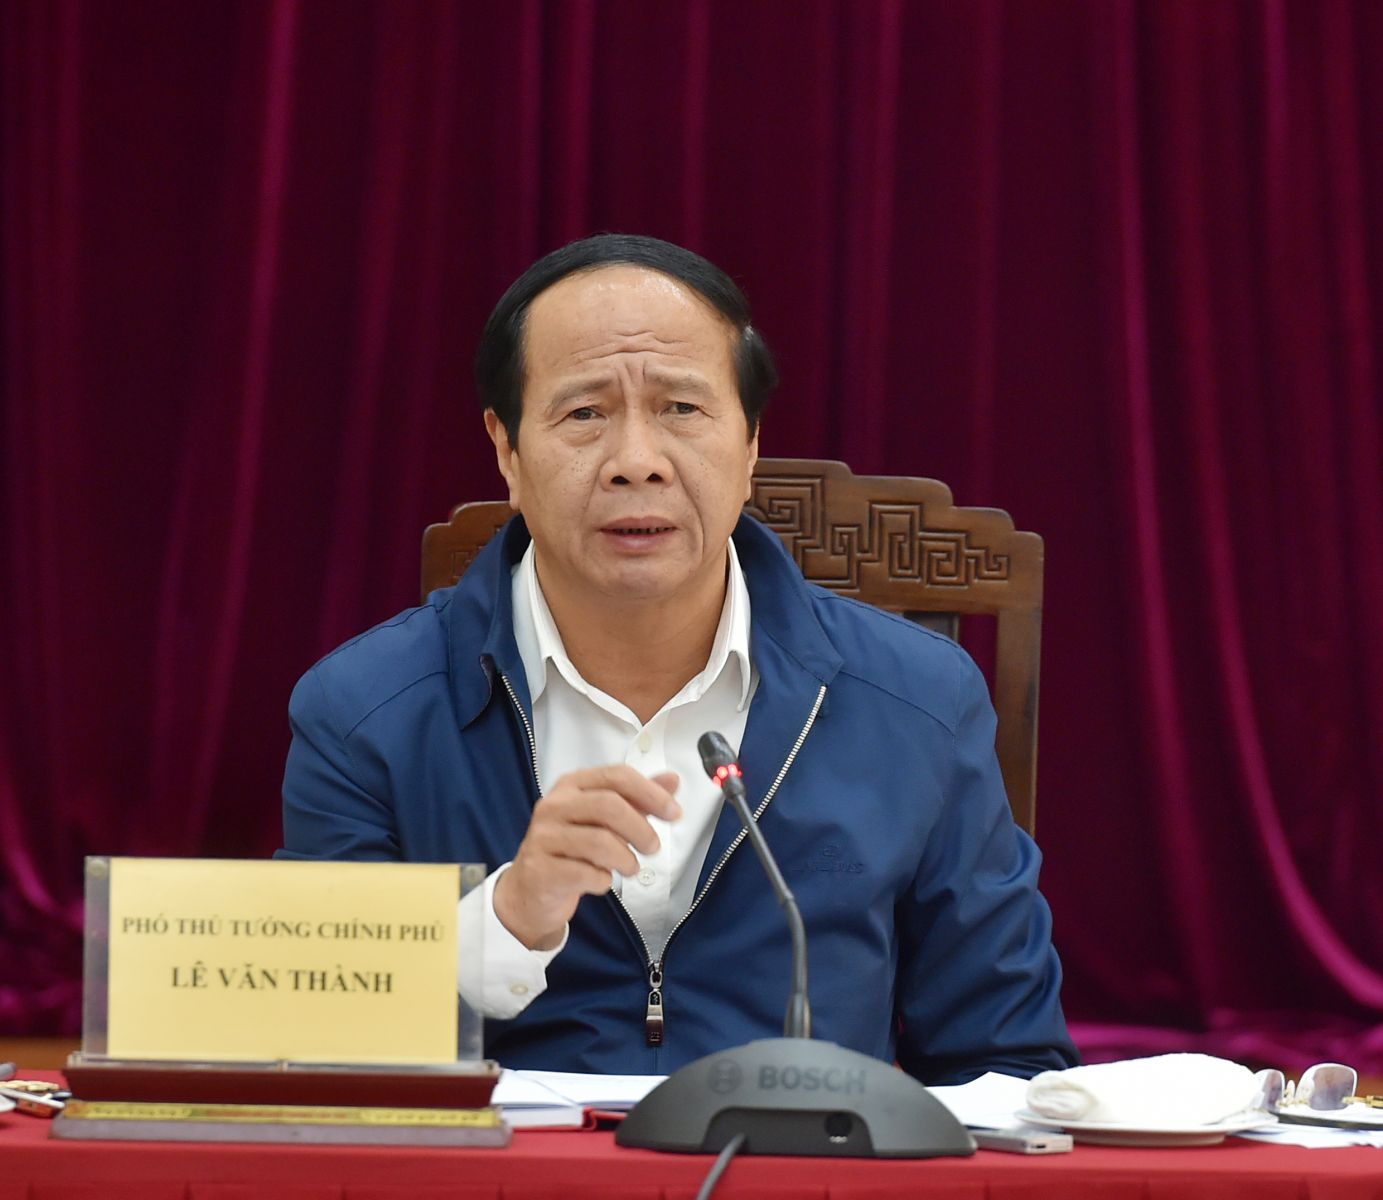  Phó Thủ tướng Chính phủ Lê Văn Thành yêu cầu Bộ GTVT bảo đảm tiến độ nhiều dự án quan trọng.Ảnh: VGP/Đức Tuân